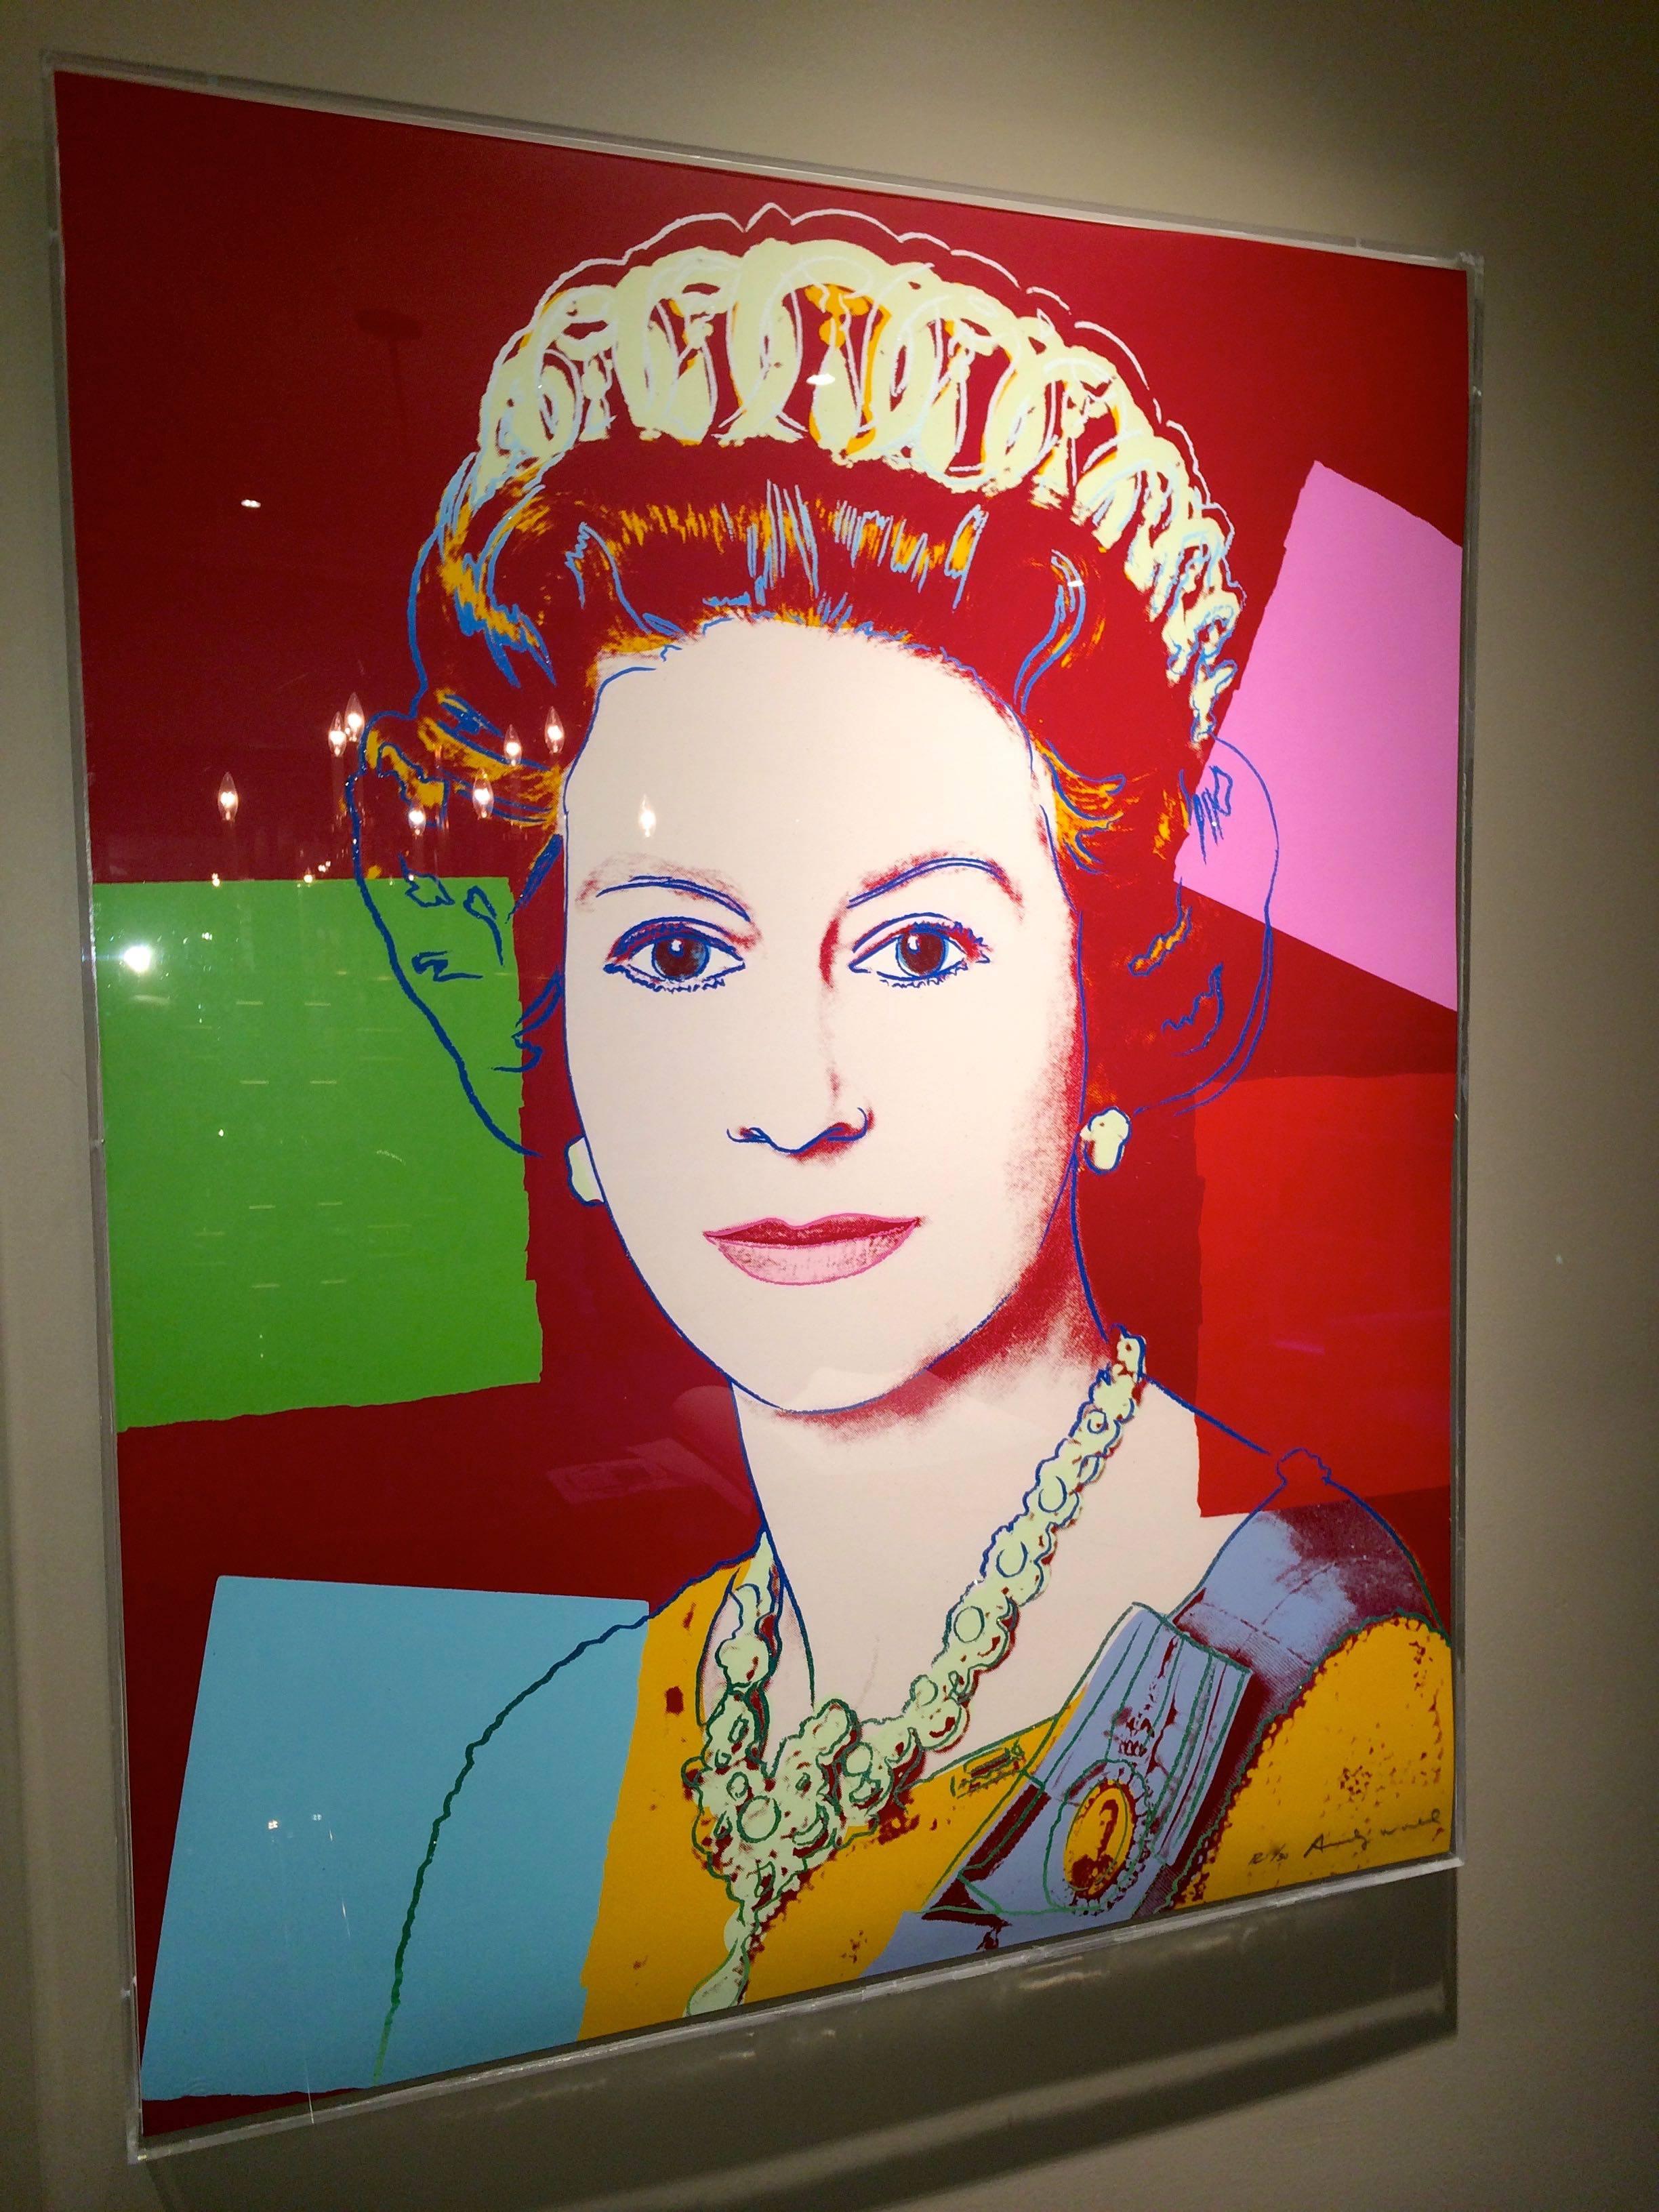 Queen Elizabeth II of the United Kingdom (FS II.334) - Print by Andy Warhol